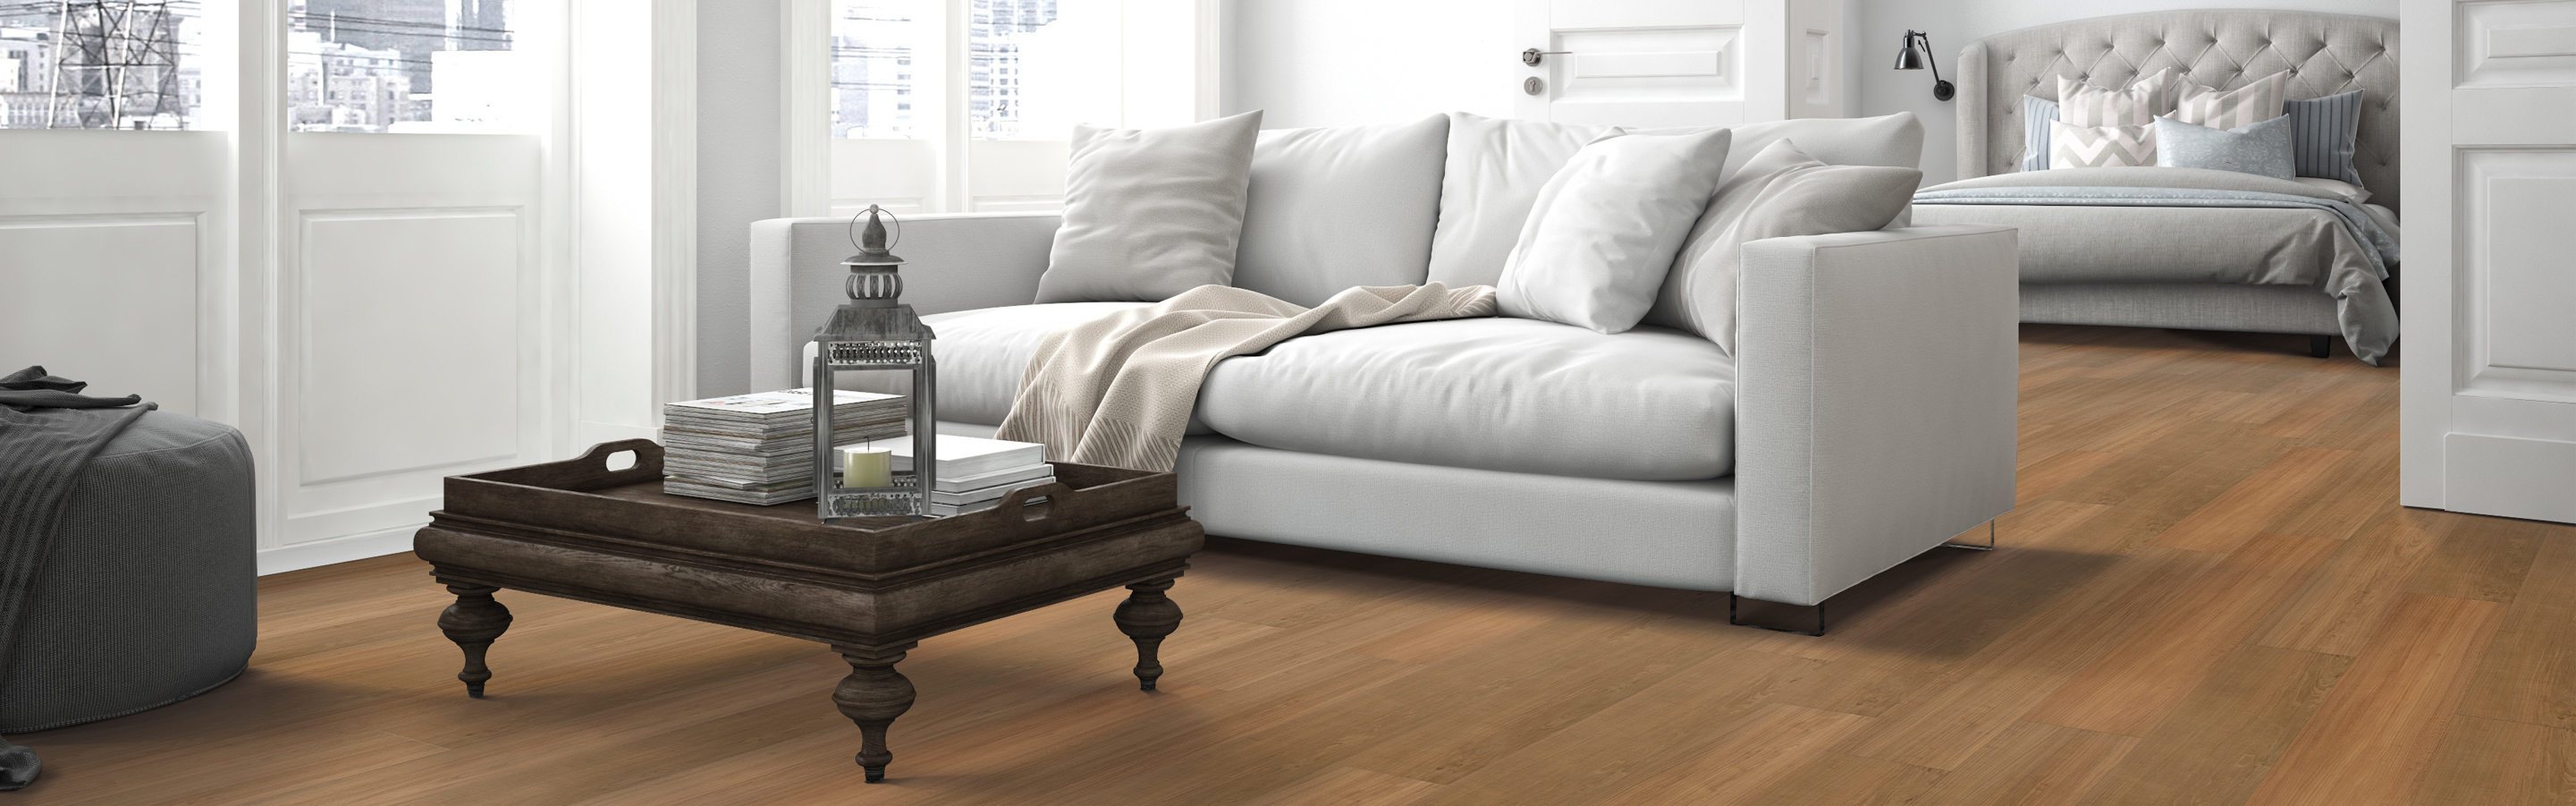 luxury vinyl plank floors in open concept home